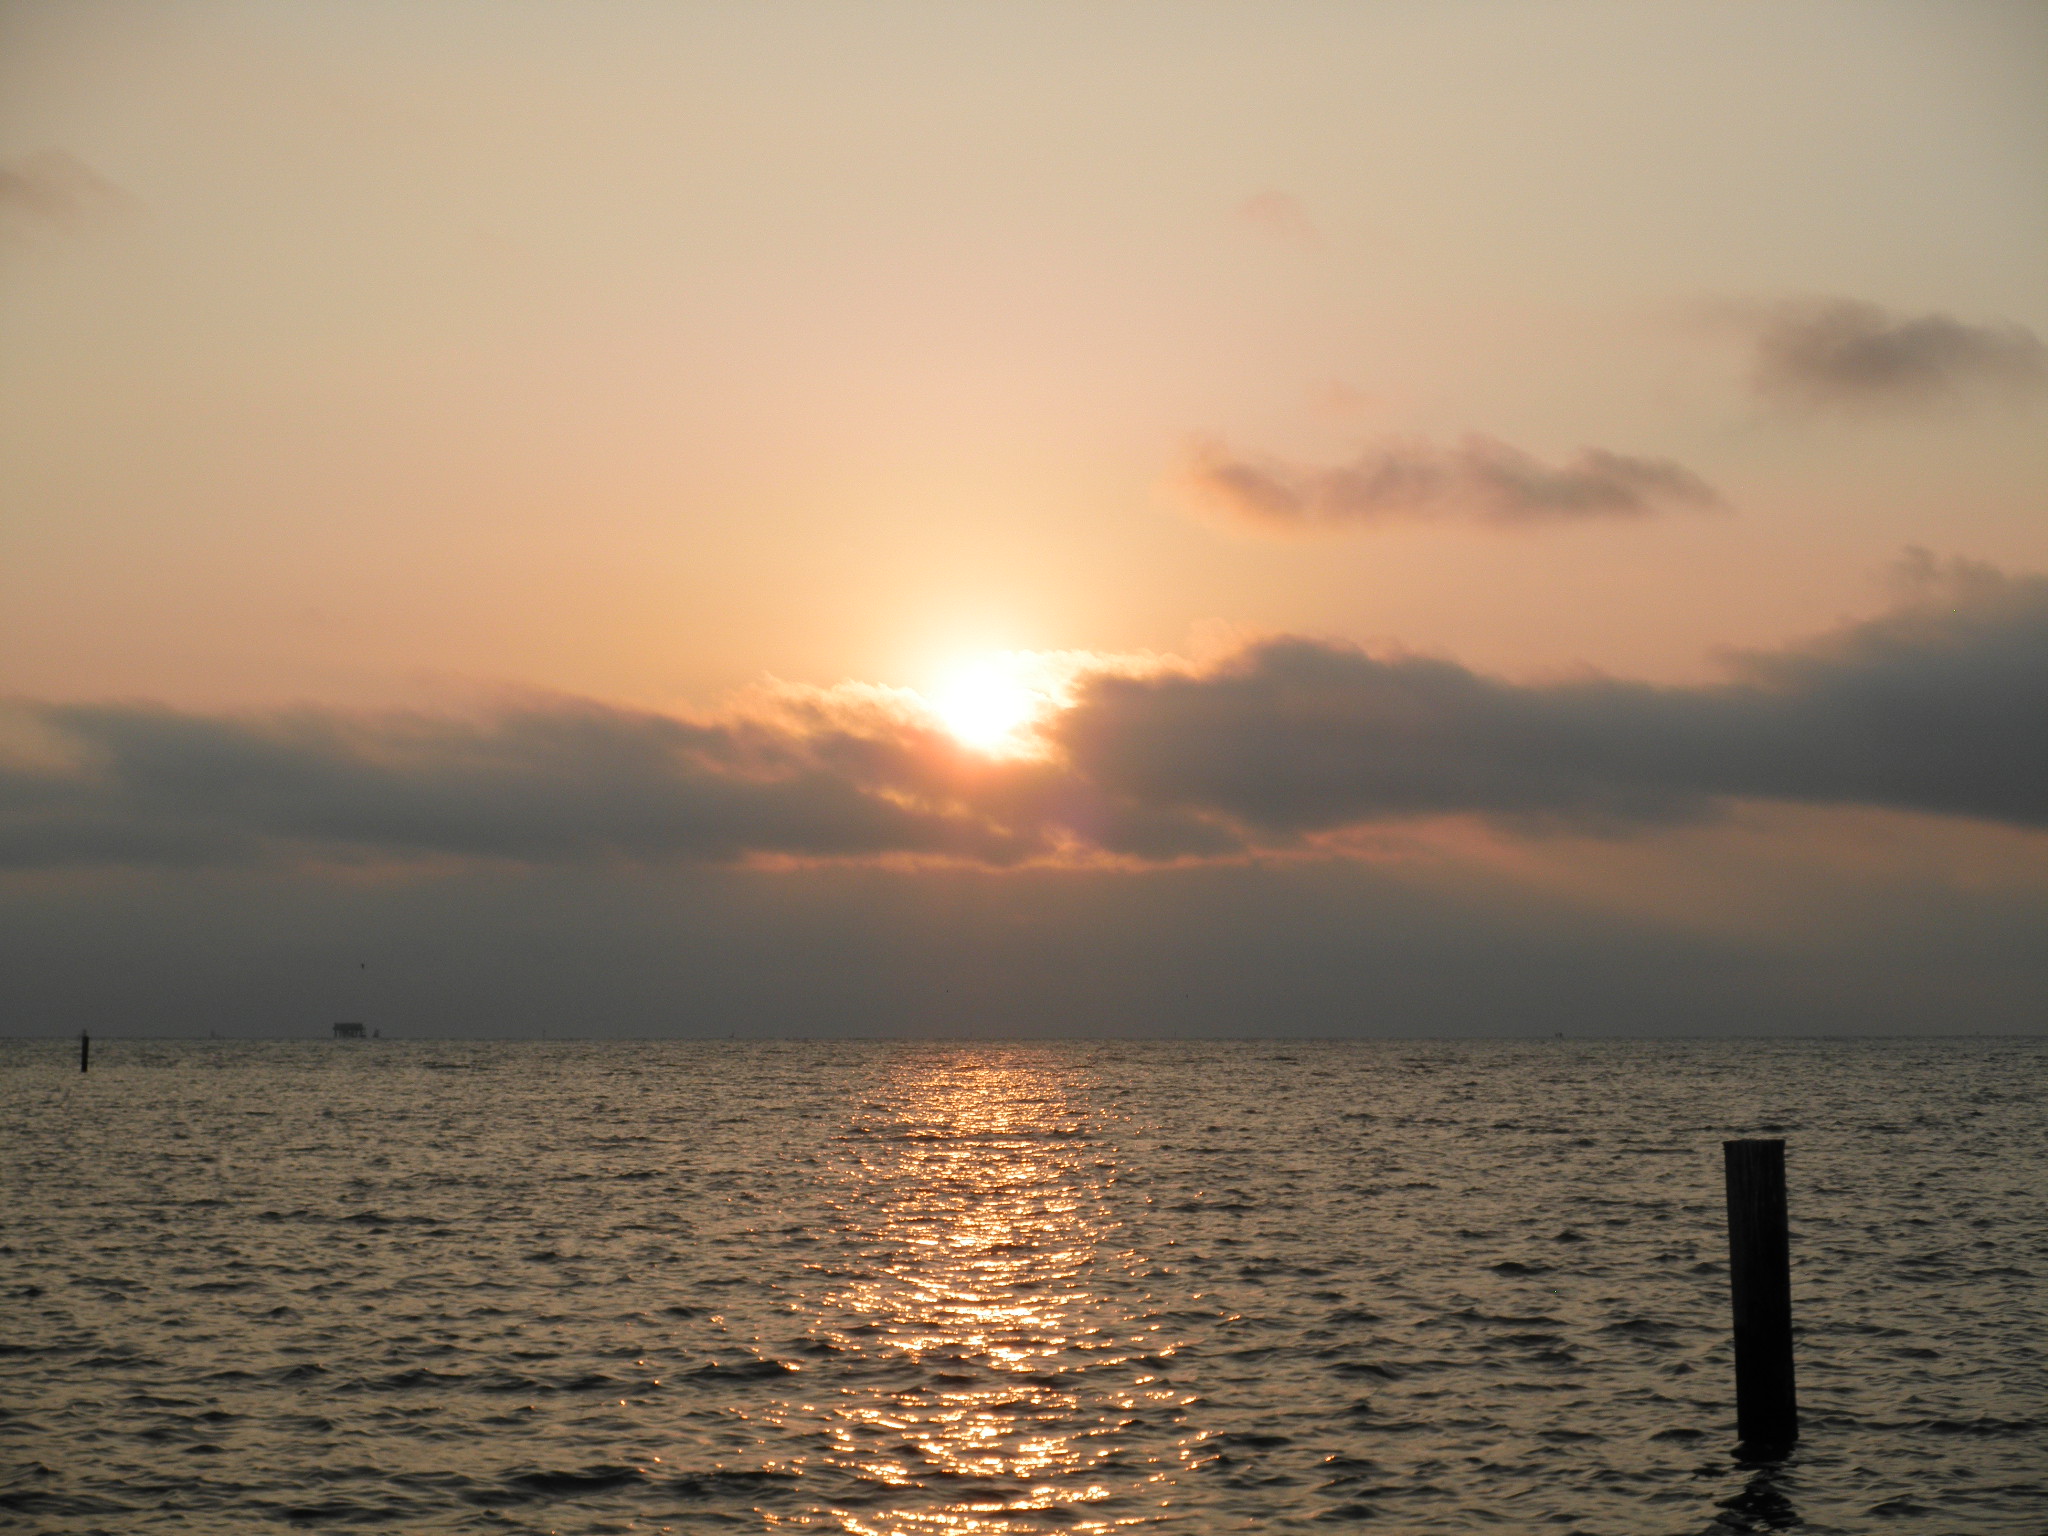 Sunrise over Aransas Bay